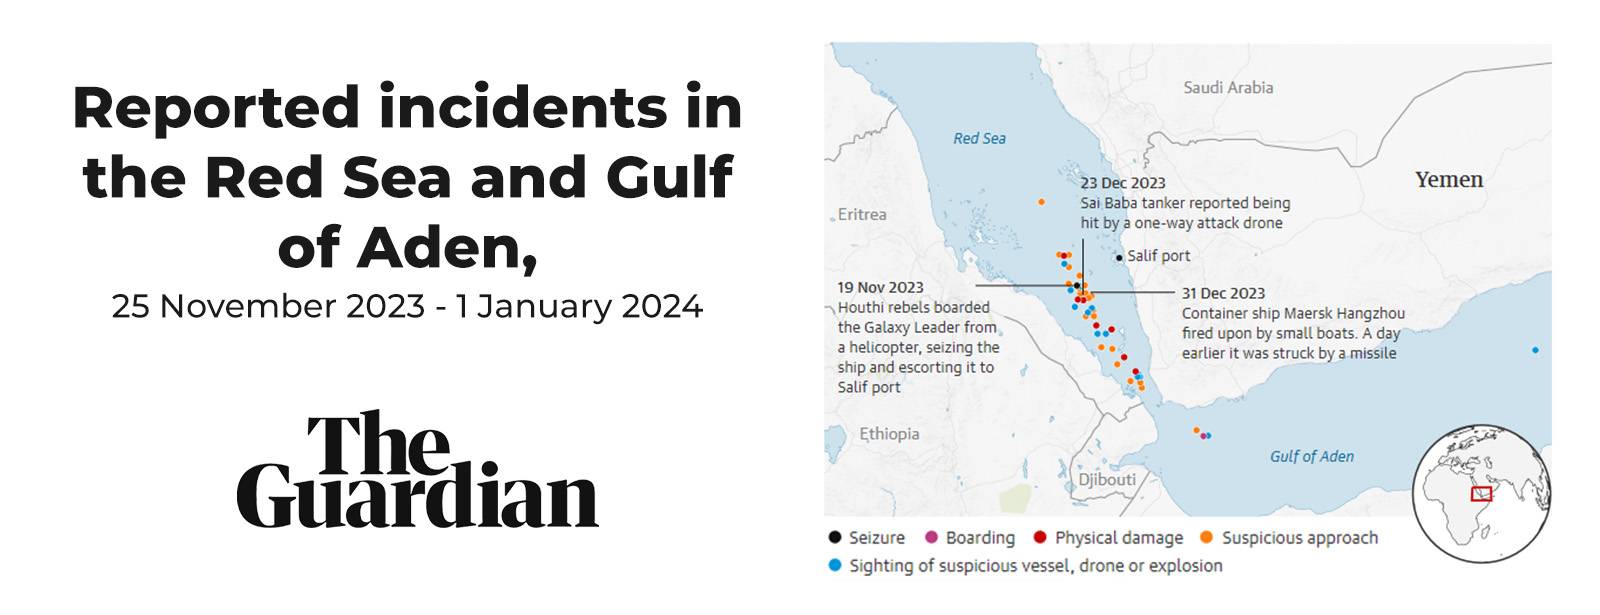 Incidentes relatados no Mar Vermelho e no Golfo de Aden